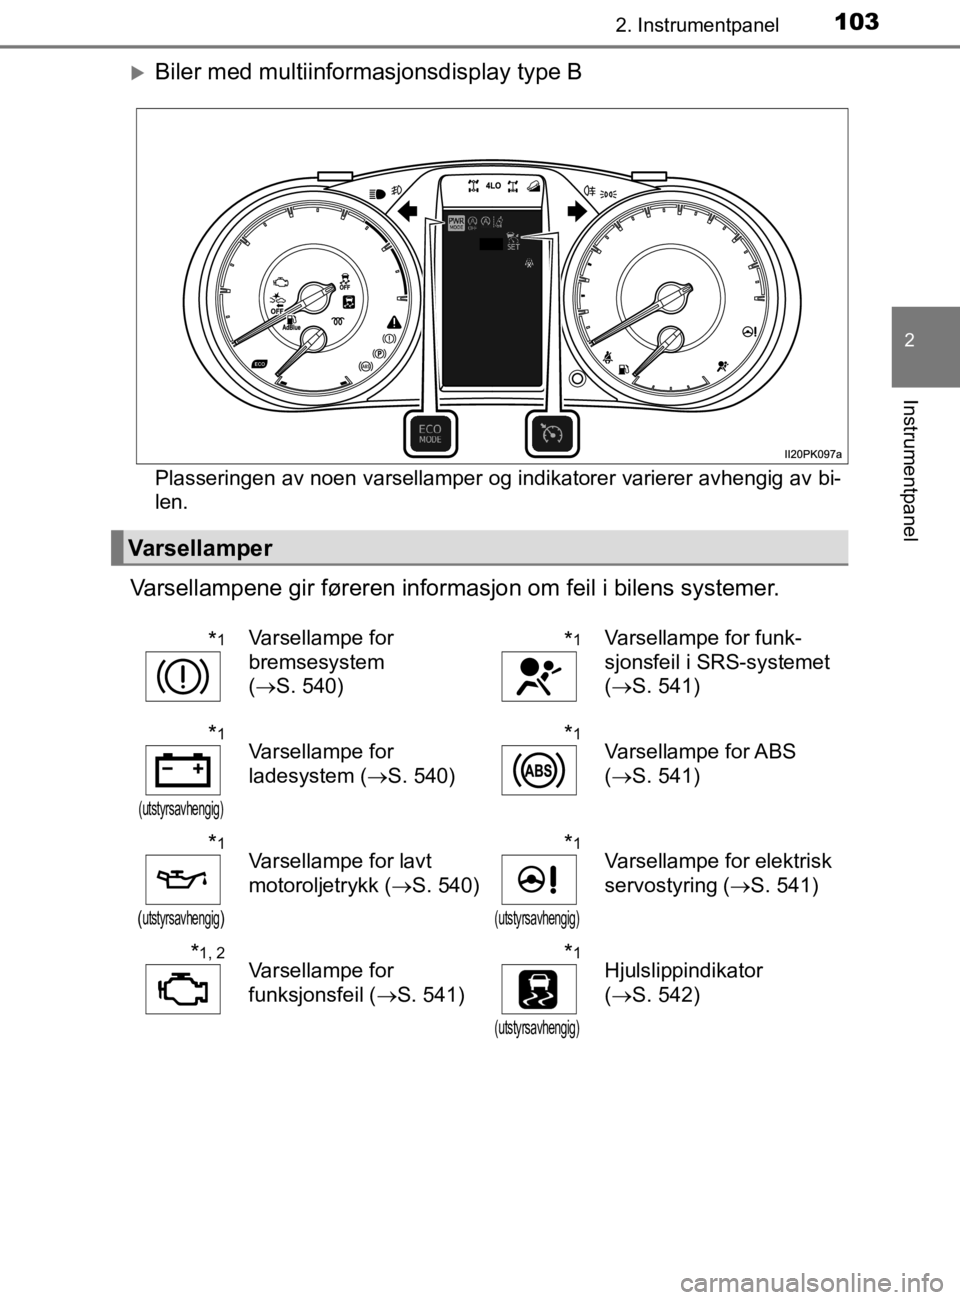 TOYOTA HILUX 2020  Instruksjoner for bruk (in Norwegian) 1032. Instrumentpanel
2
Instrumentpanel
HILUX_OM_OM0K321NO
Biler med multiinformasjonsdisplay type B
Plasseringen av noen varsellamper og indikatorer varierer avhengig av bi-
len.
Varsellampene gir